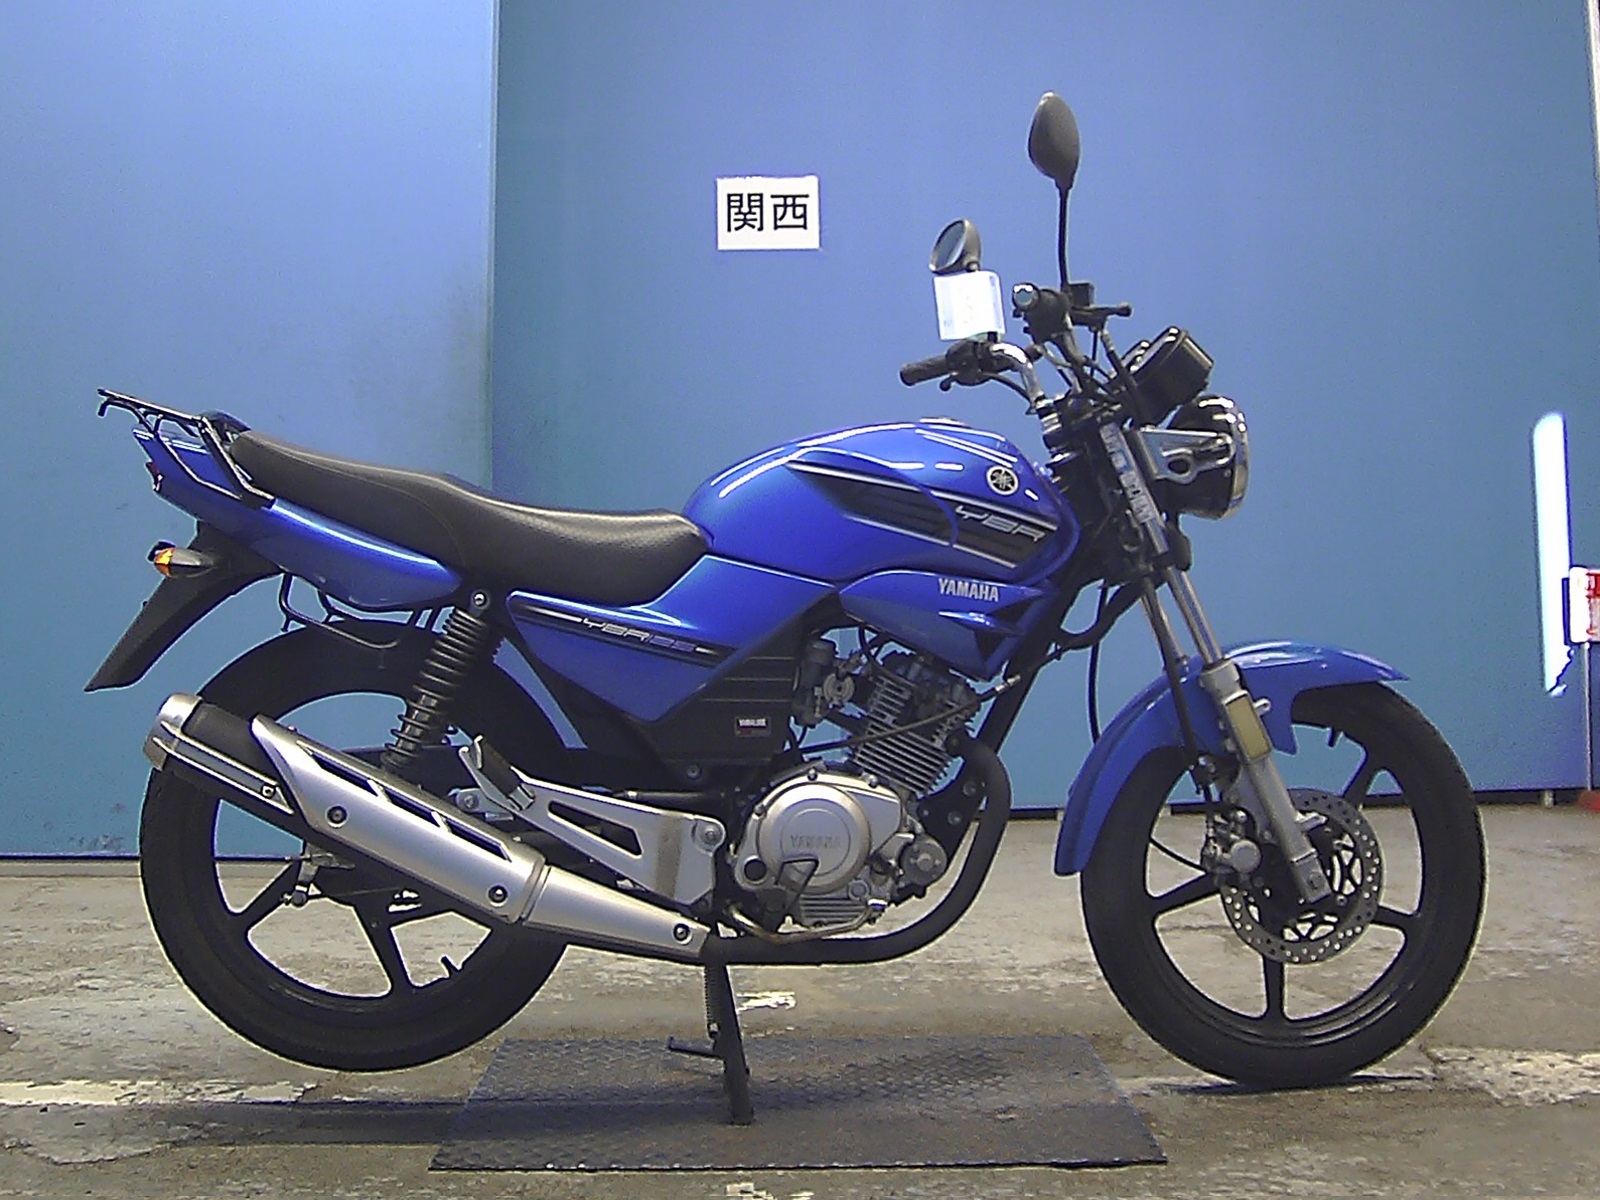 Yamaha ybr 125 мотоцикл: технические характеристики | отзывы